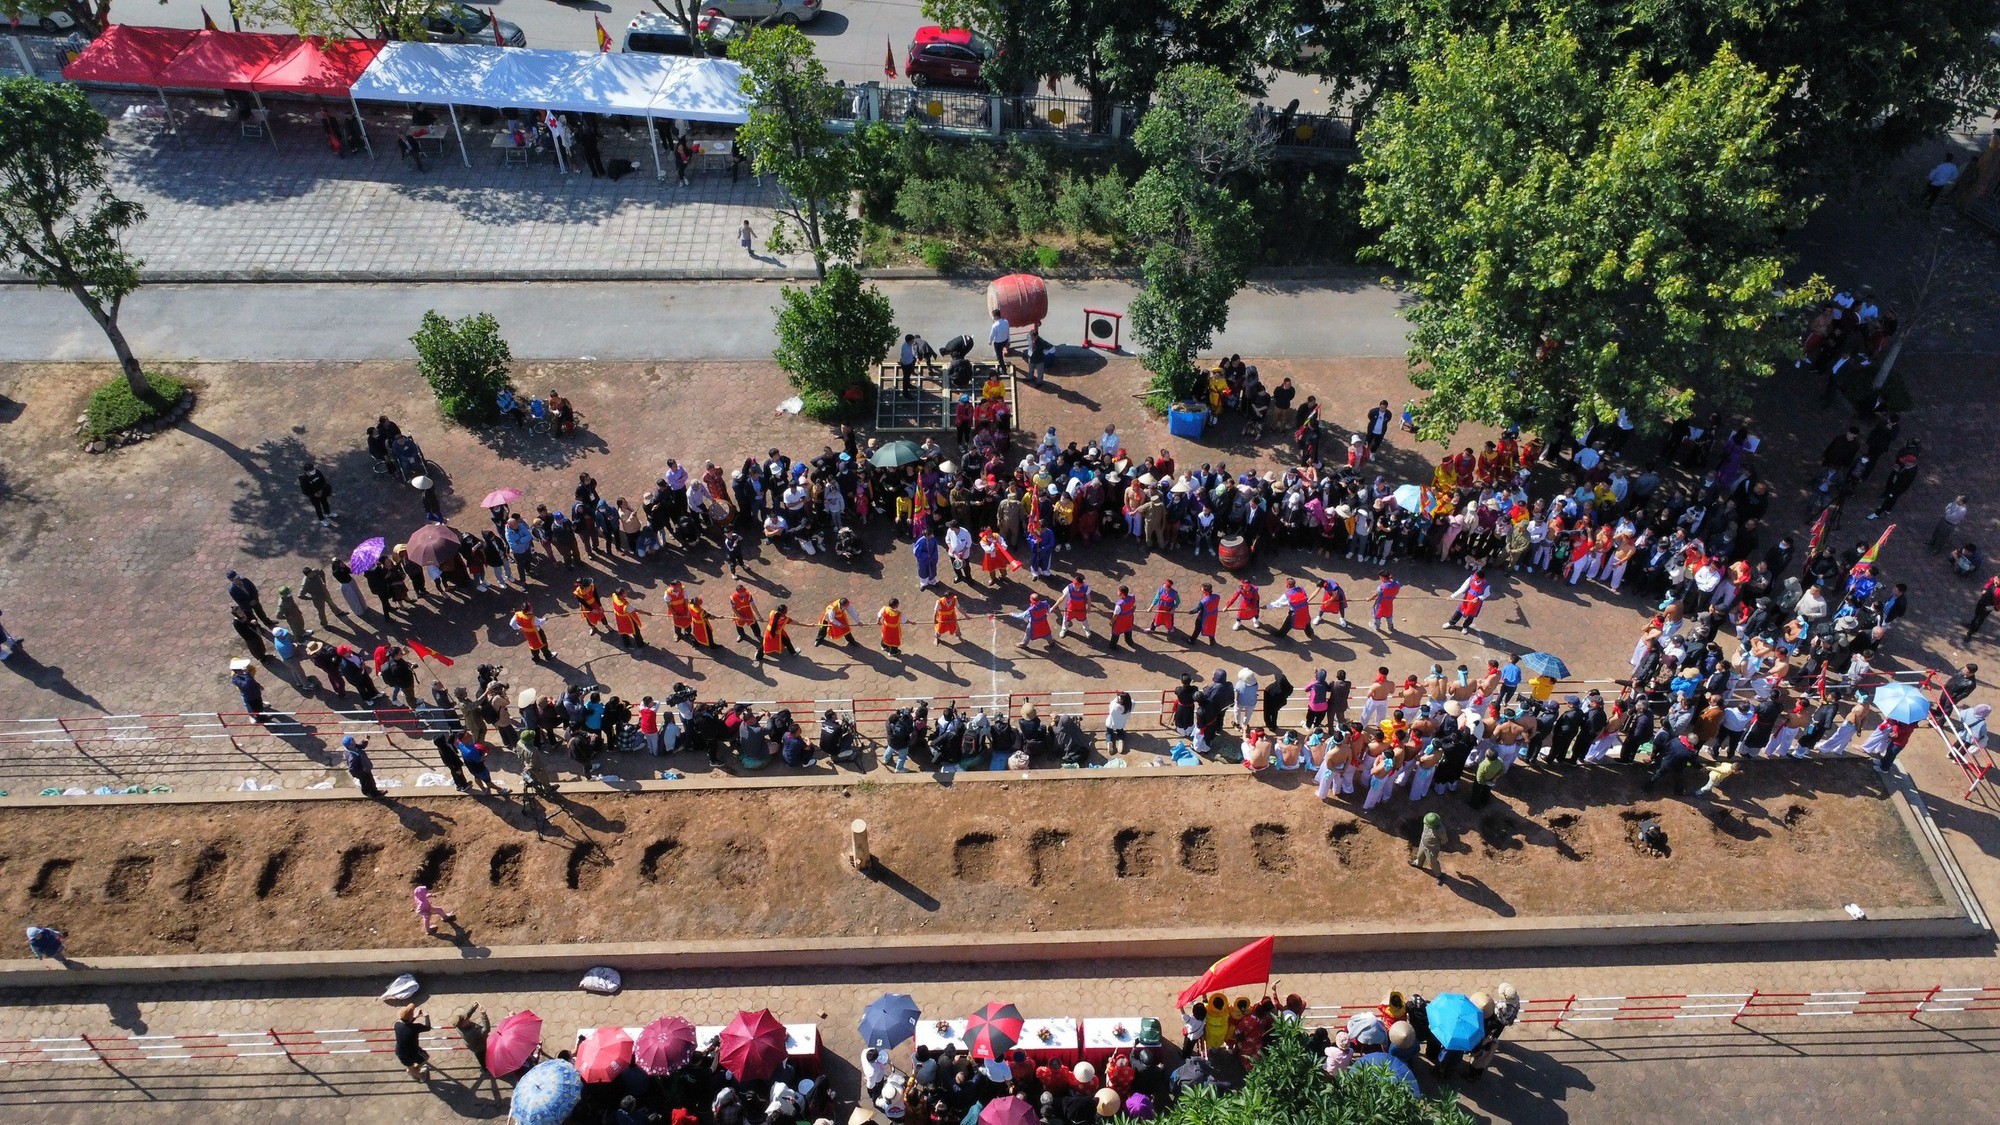 Buổi trình diễn Nghi lễ và trò chơi kéo co Việt Nam - Hàn Quốc thu hút sự tham gia của gần 500 nghệ nhân, người thực hành nghi lễ và trò chơi kéo co đến từ các tỉnh Bắc Ninh, Lào Cai, Vĩnh Phúc, thành phố Hà Nội và thành phố Dangjin (Hàn Quốc). (Ảnh: Tổ quốc)